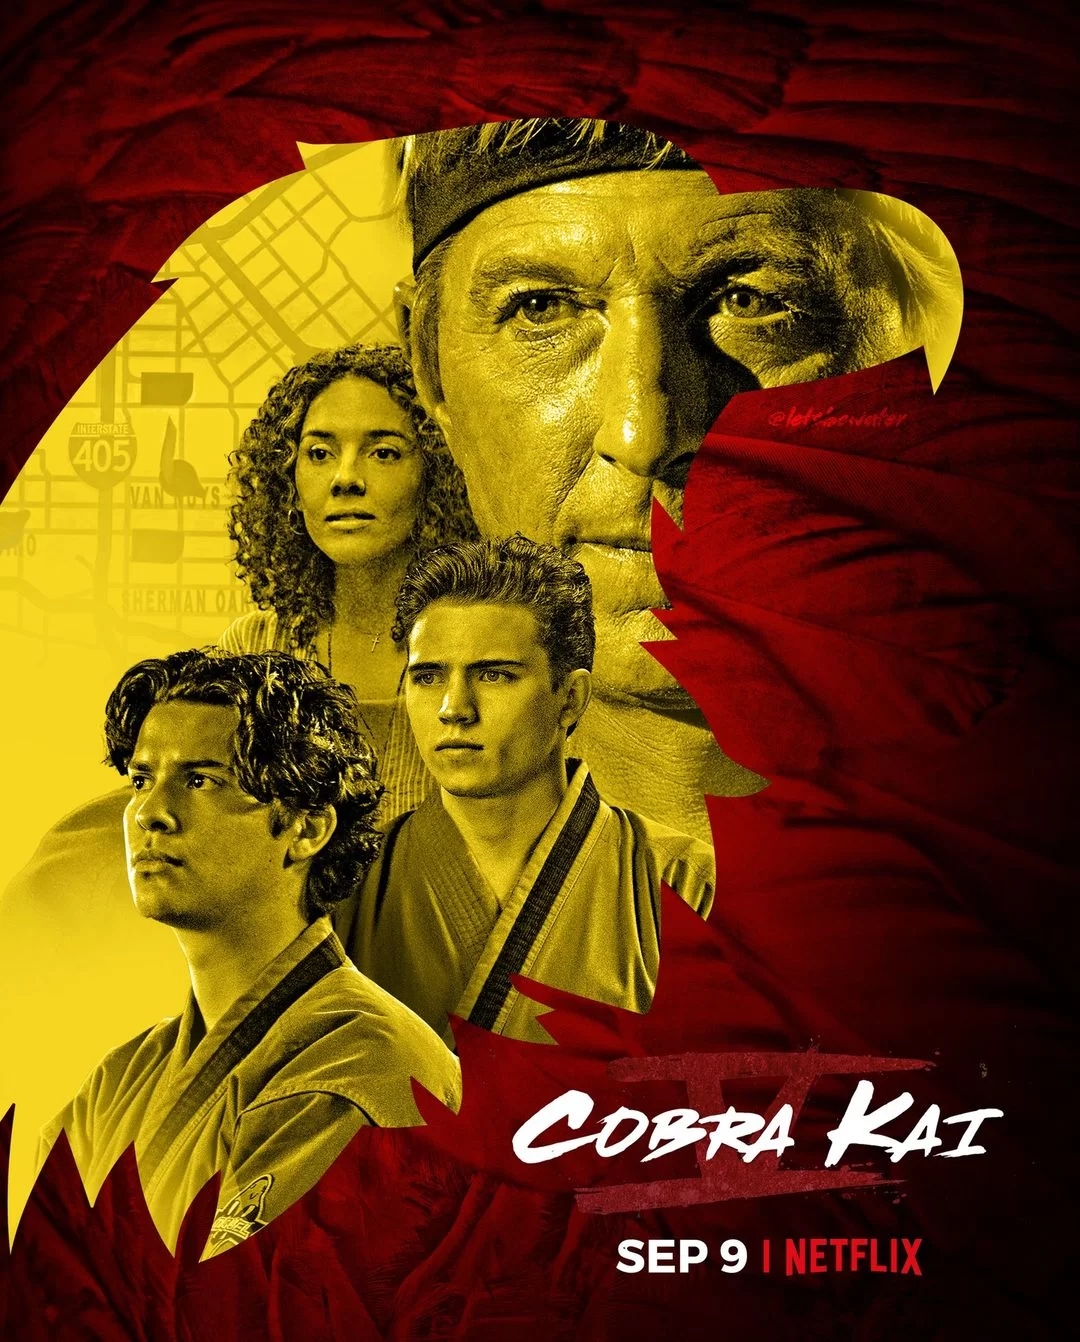 cobra kai season 5 concept posters 3